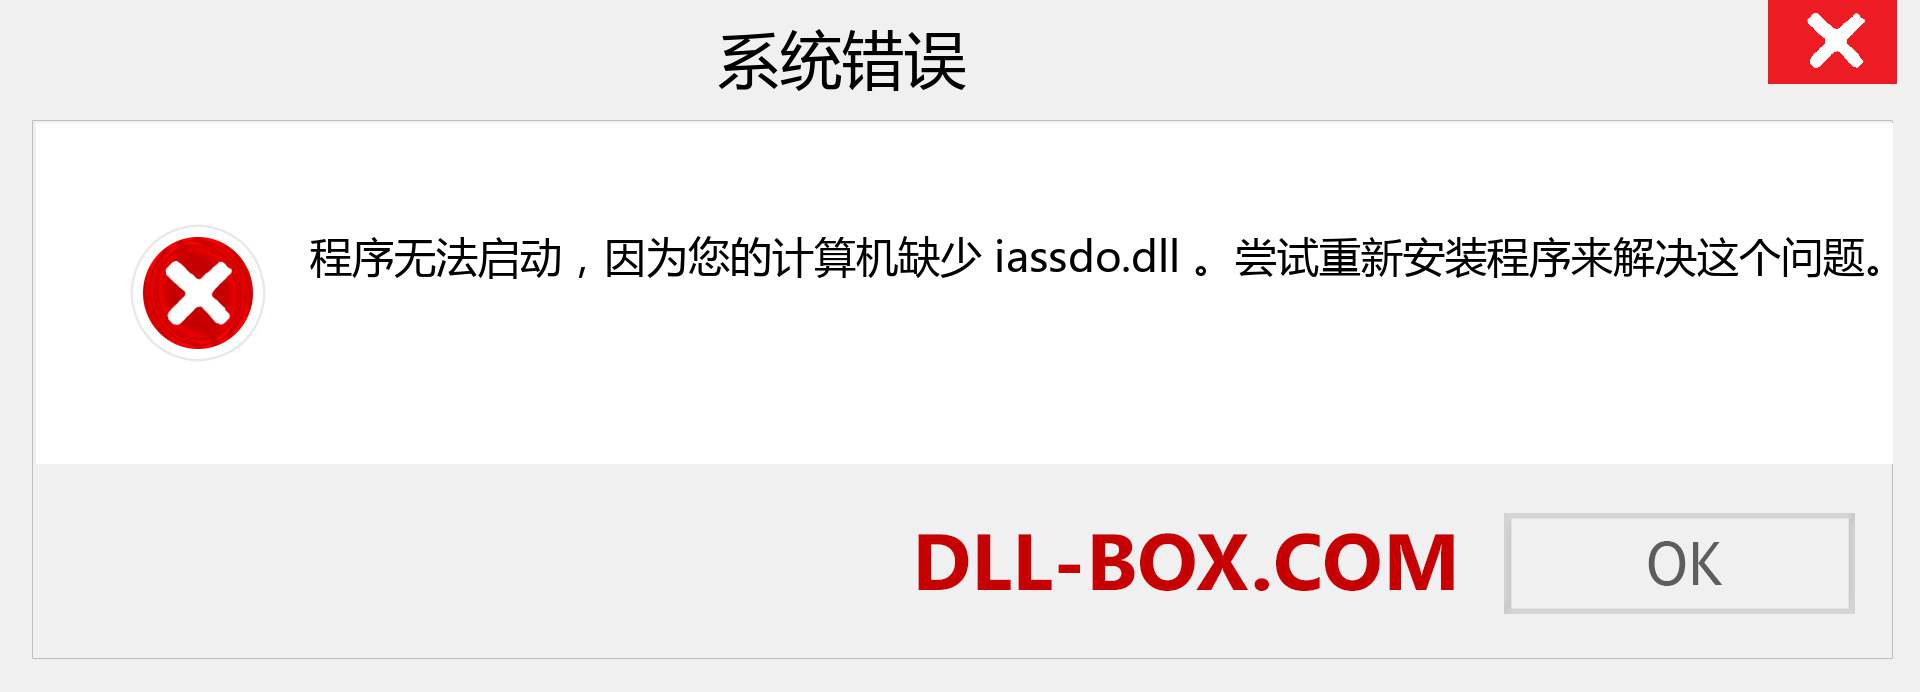 iassdo.dll 文件丢失？。 适用于 Windows 7、8、10 的下载 - 修复 Windows、照片、图像上的 iassdo dll 丢失错误